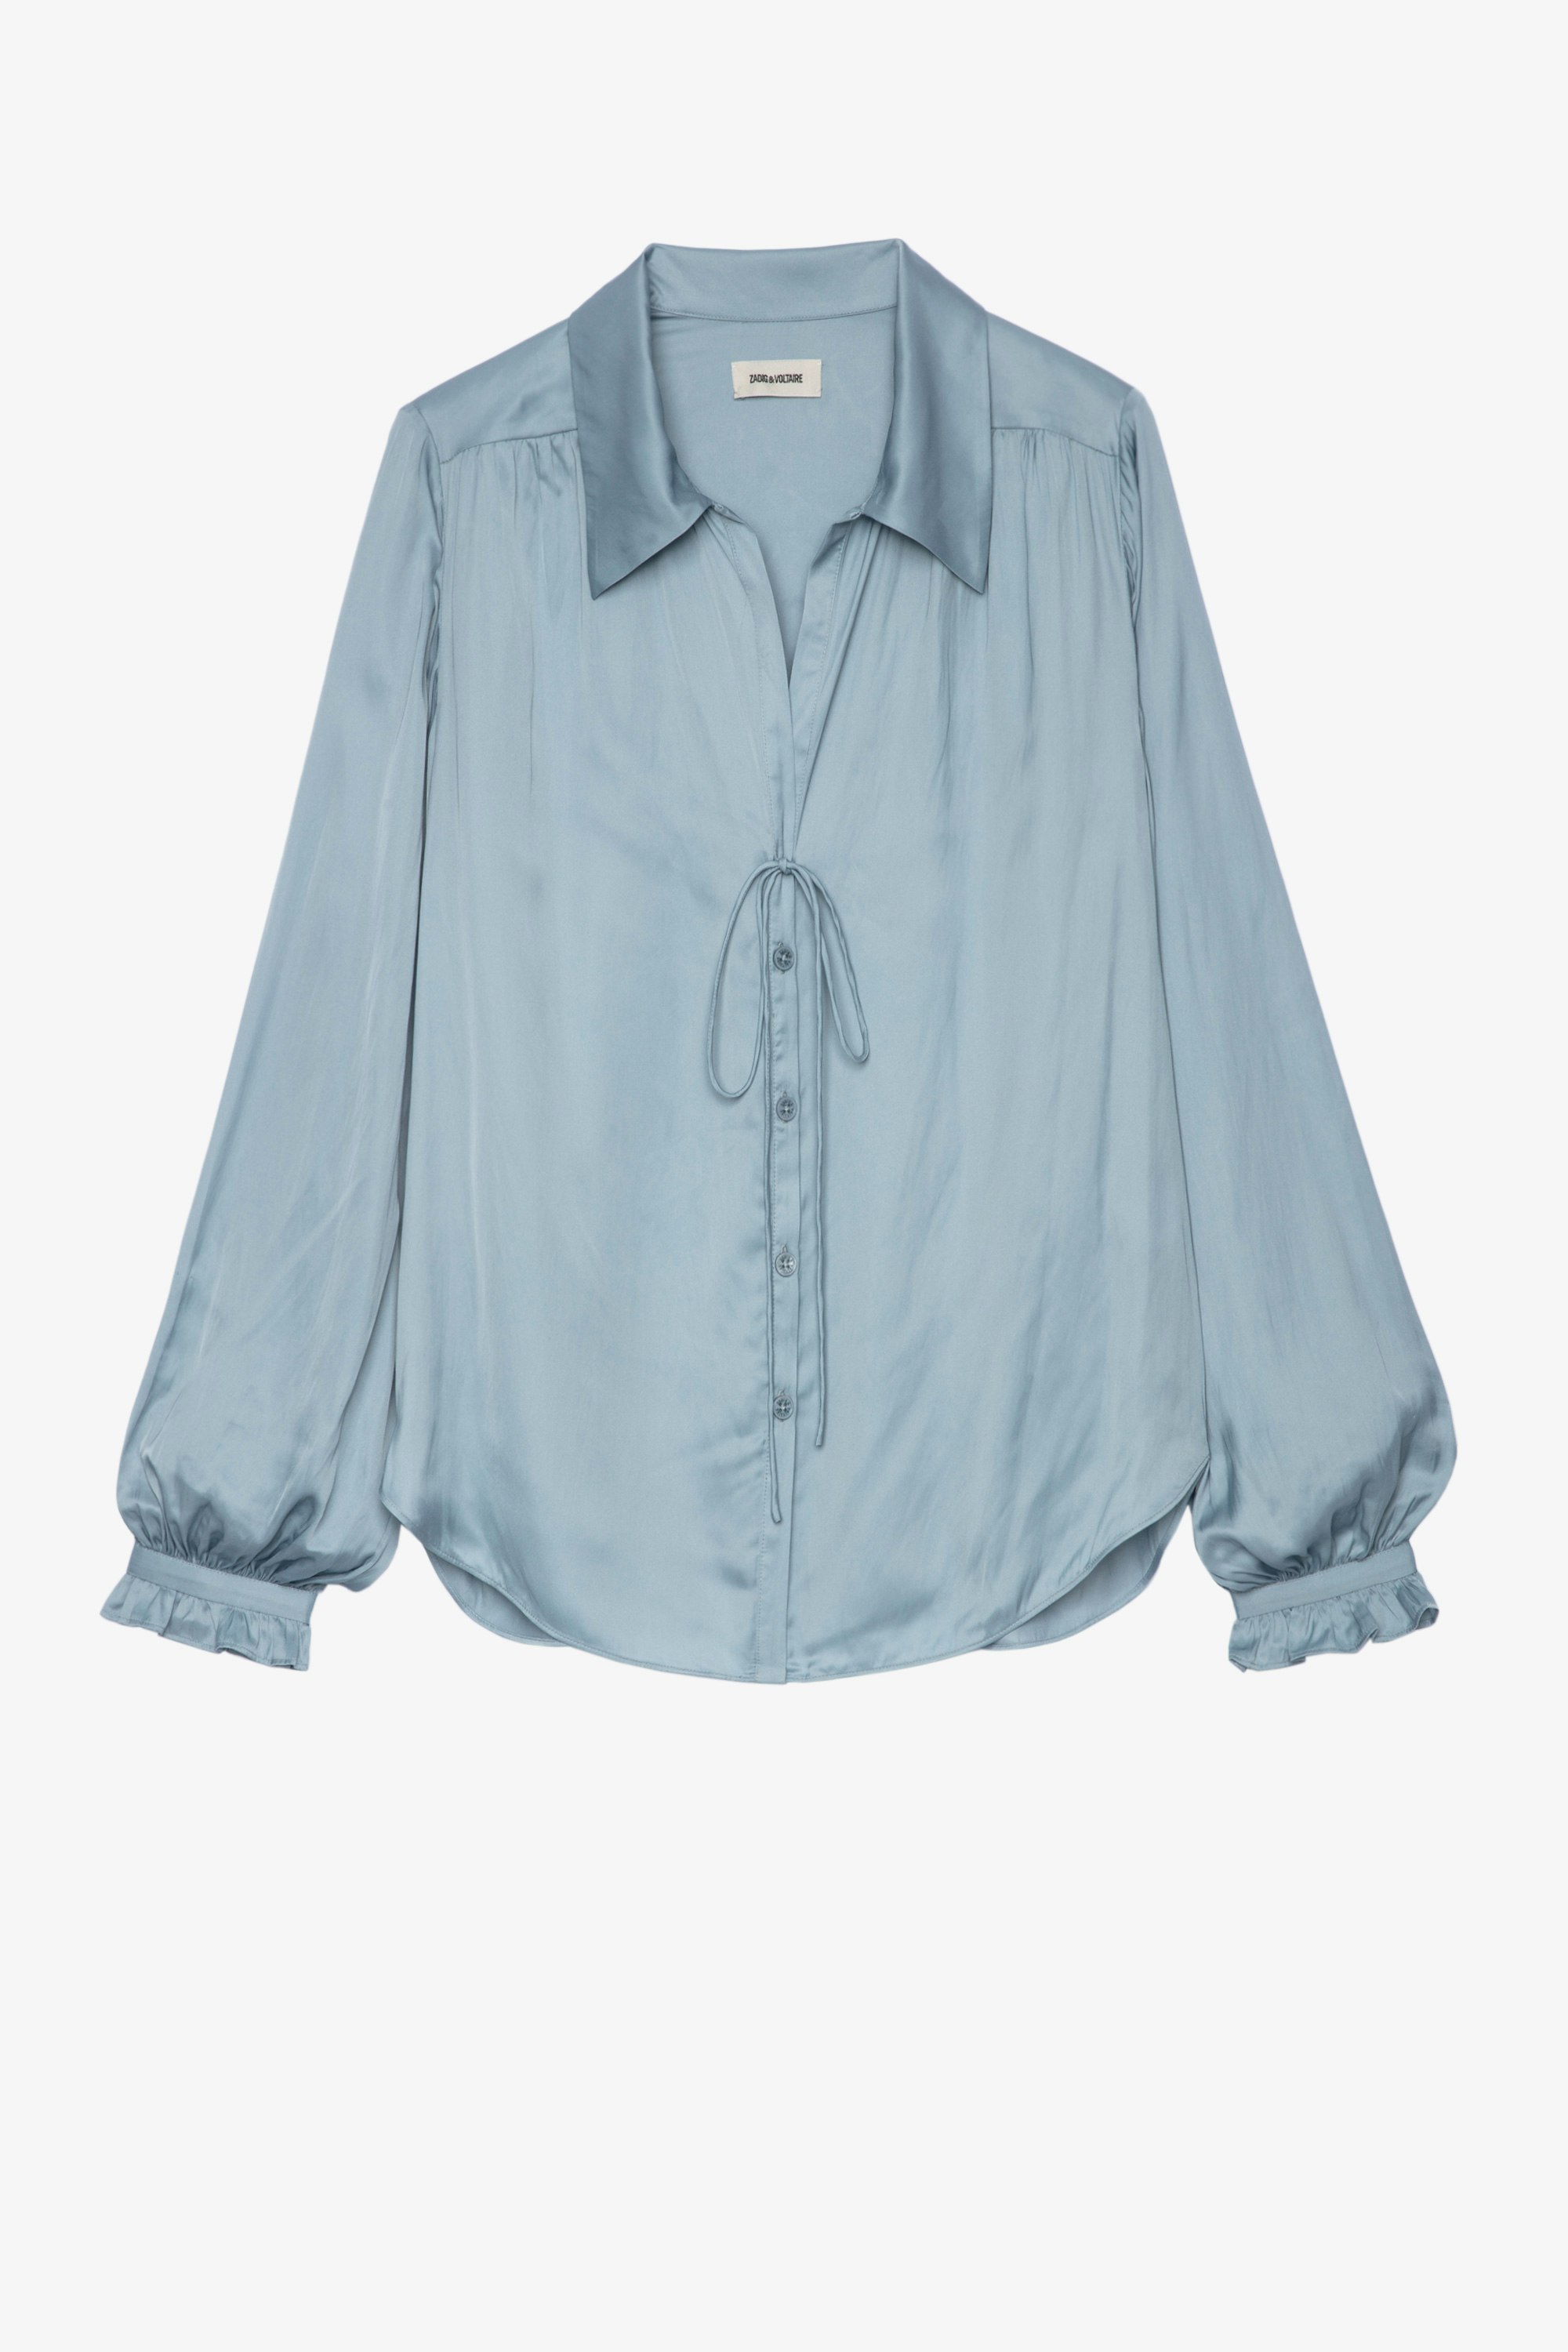 Tilan Satin Shirt - Women's light blue blouse.